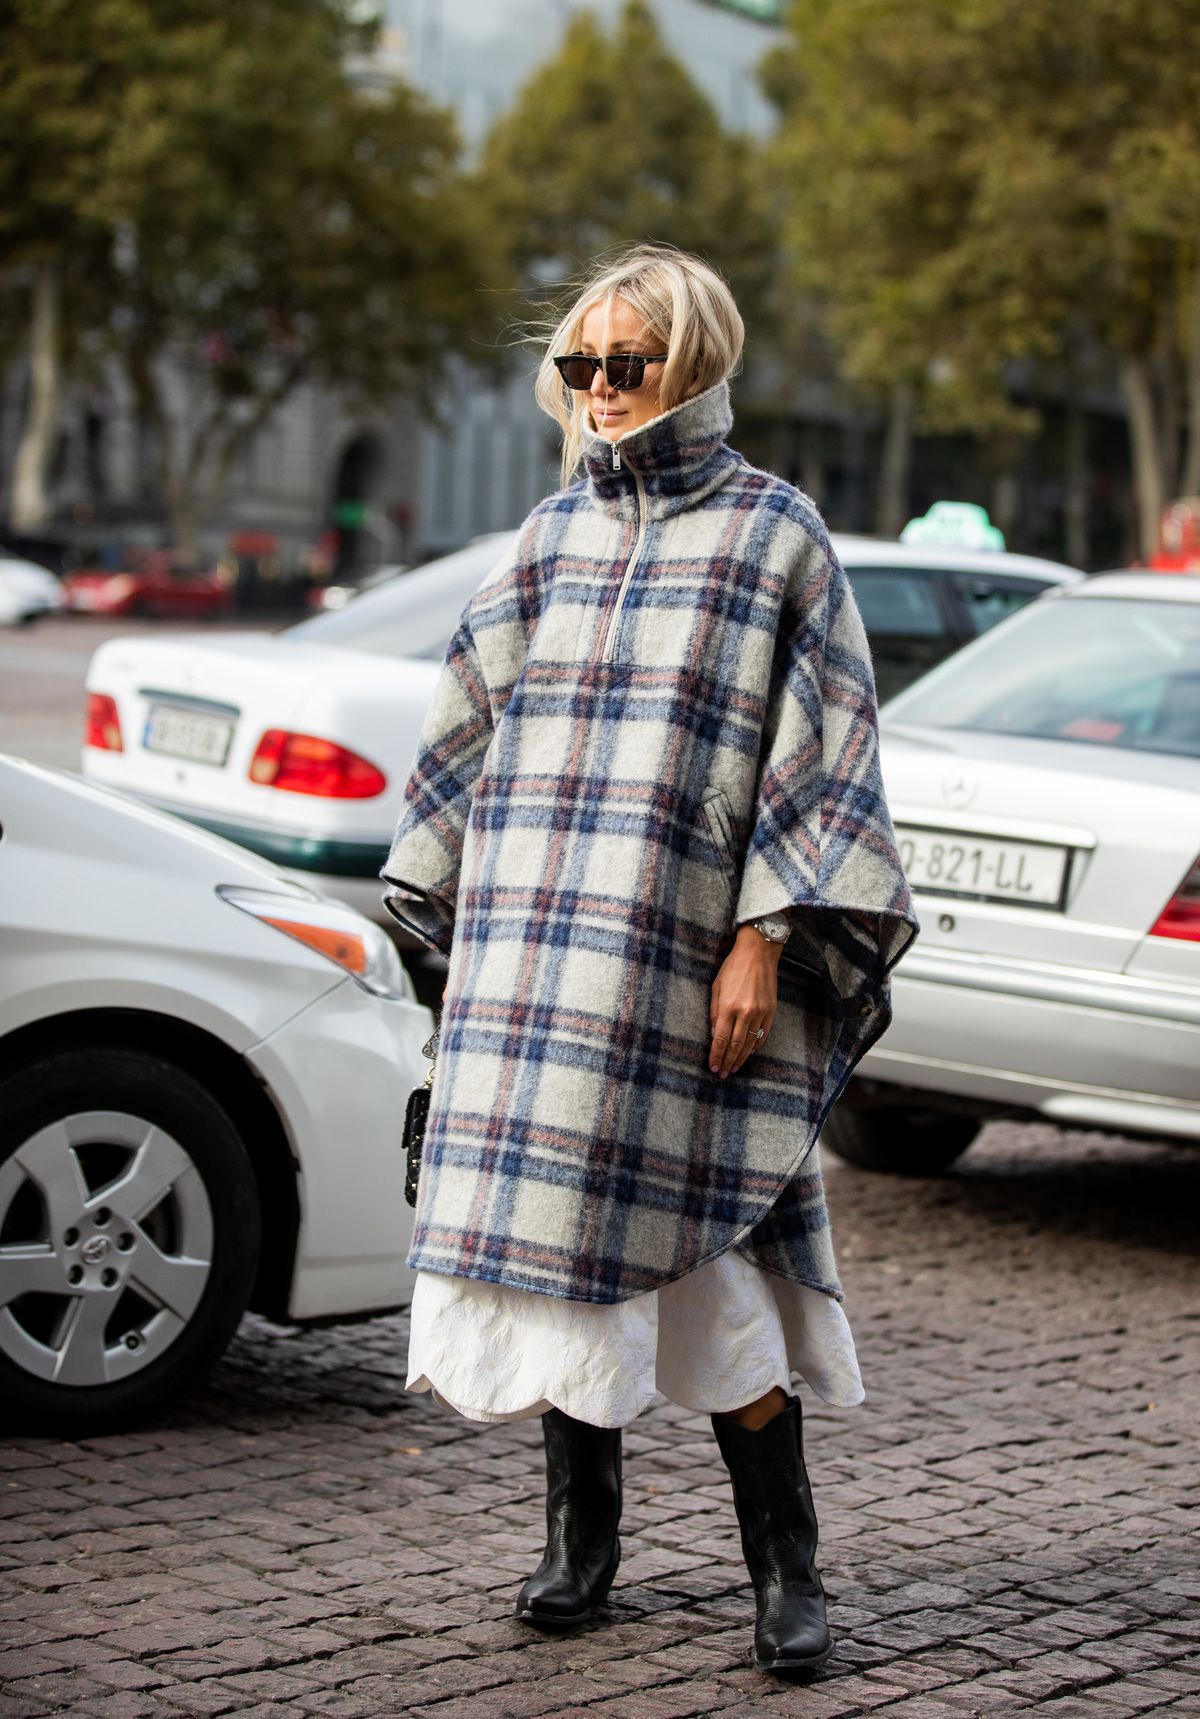 Наймодніший верхній одяг сезону осінь-зима 2019-2020 — пальто в клітку. Пальто вже приміряли зірки street style.